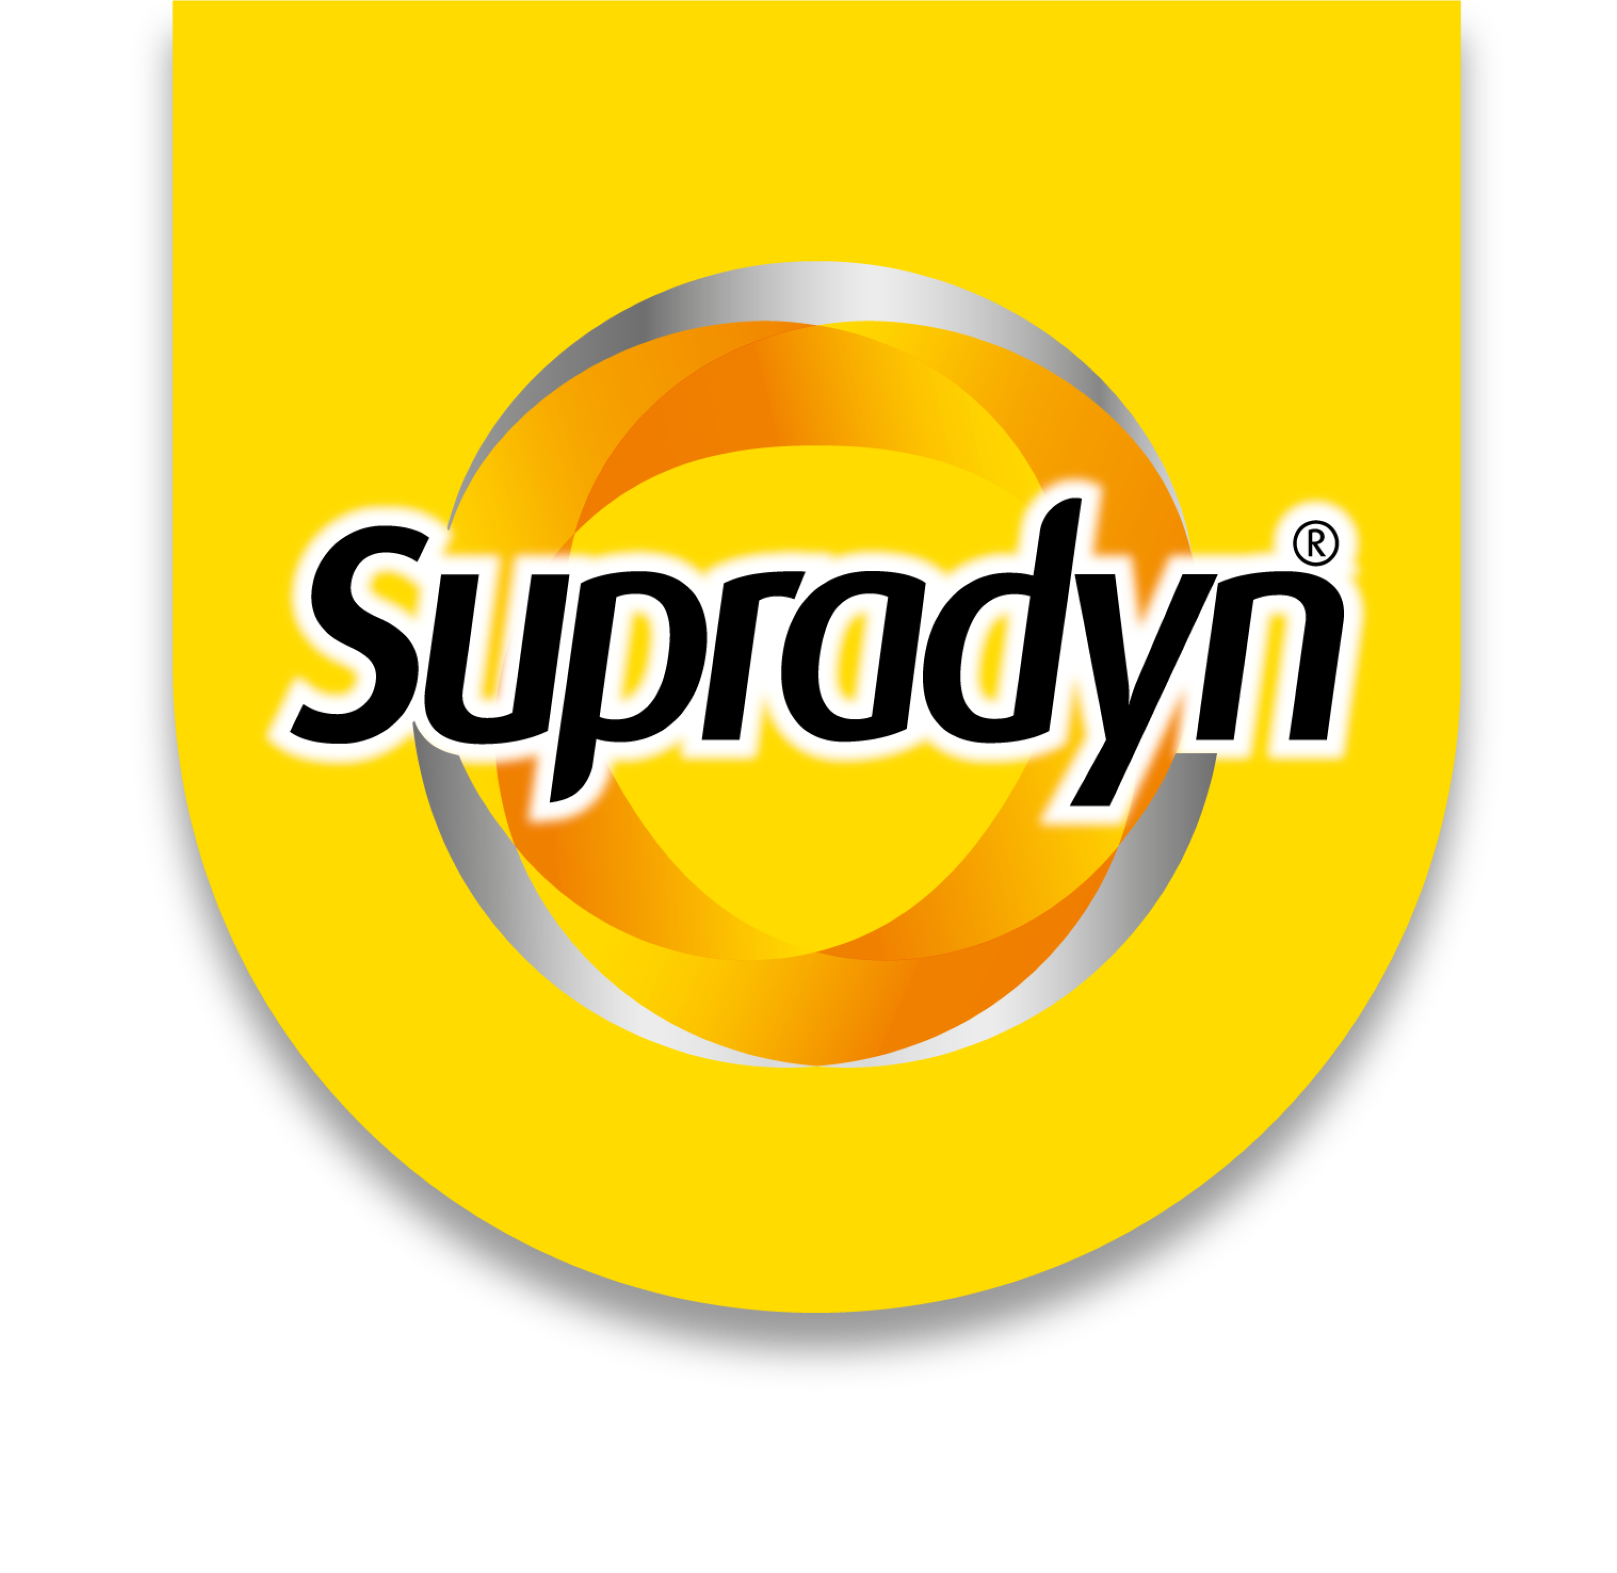 Supradyn® vital 50+ - Filmtabletten